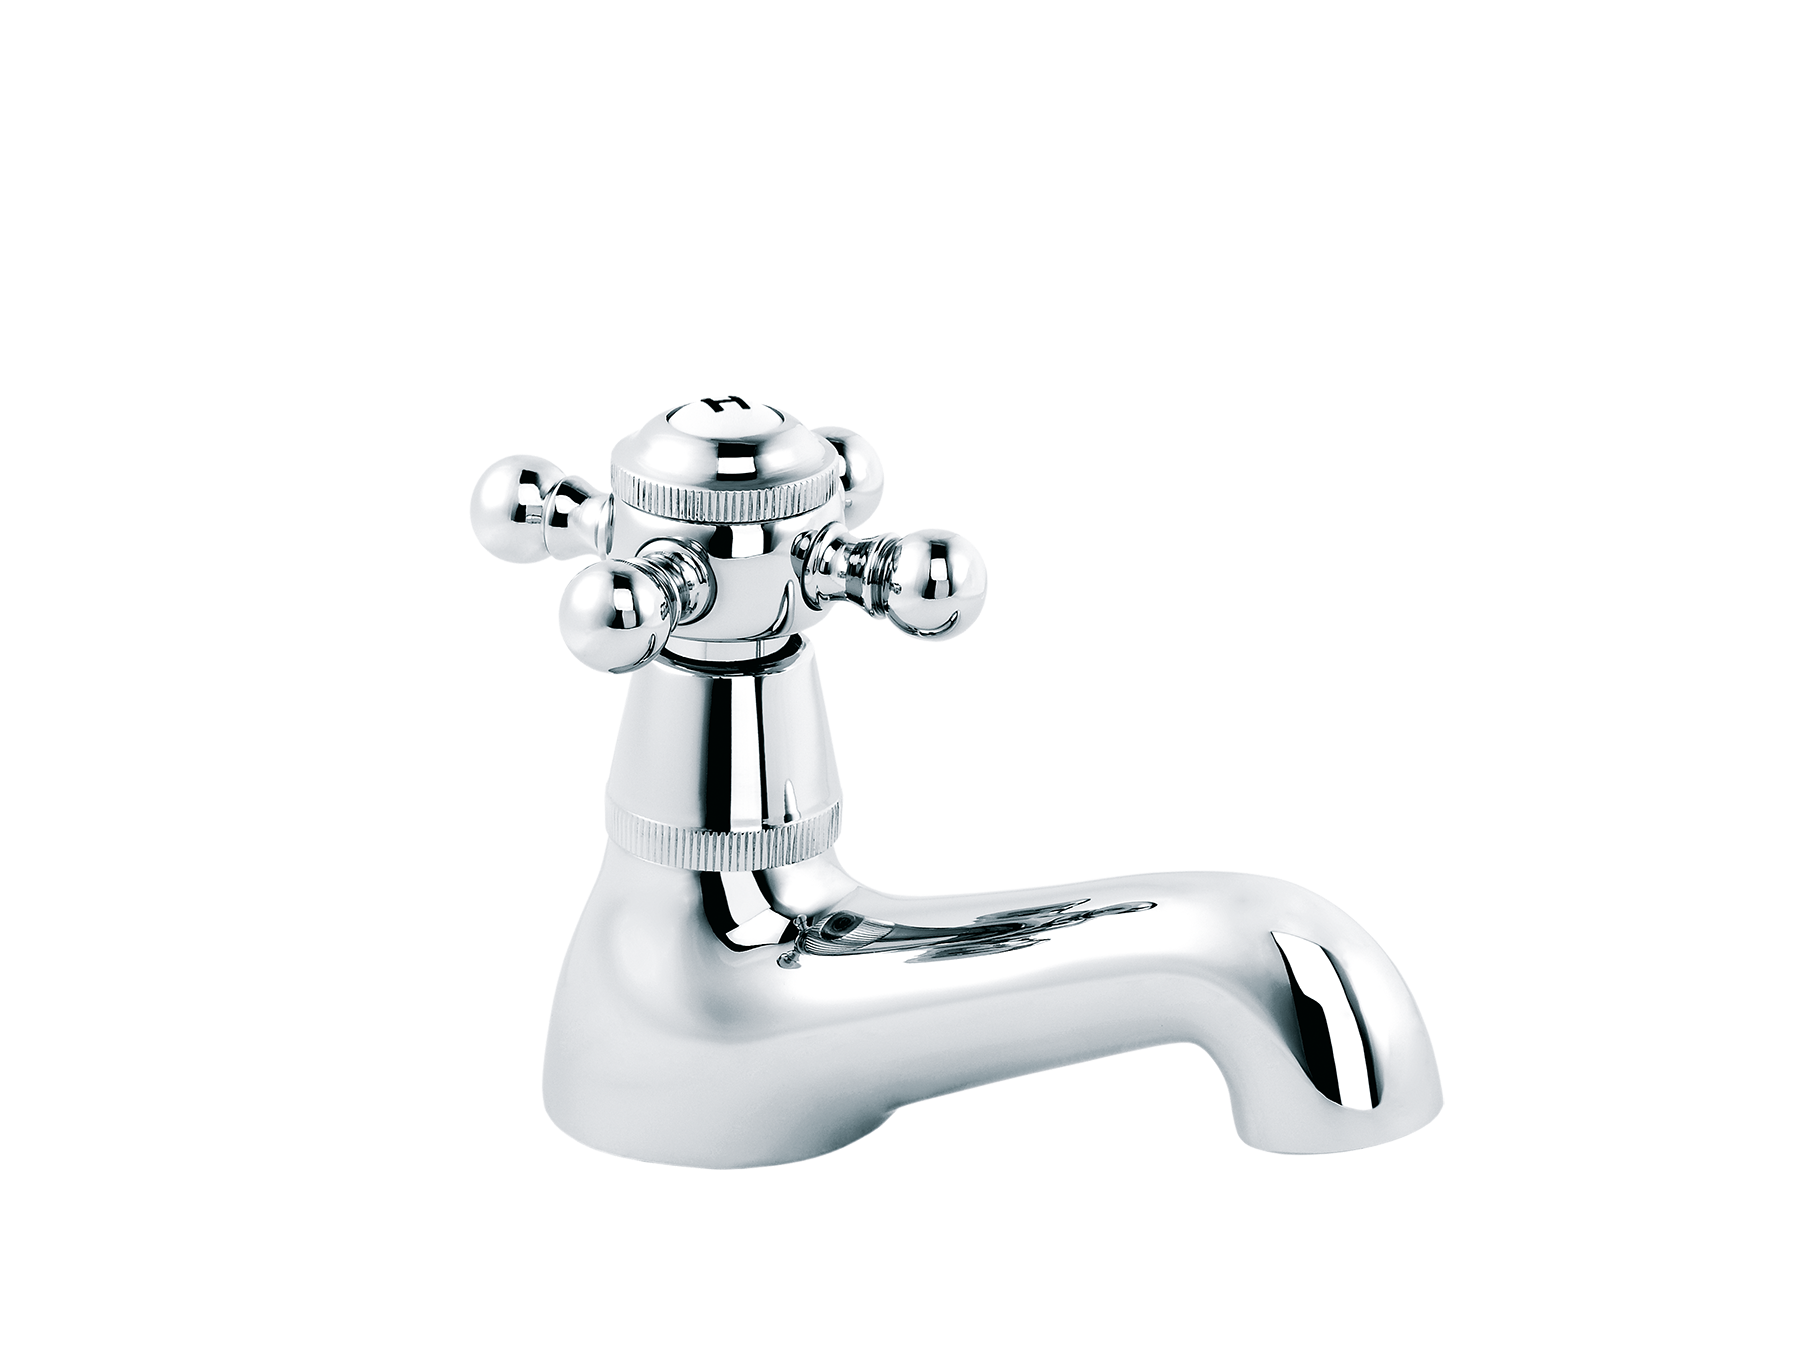 Washbasin tap, hot